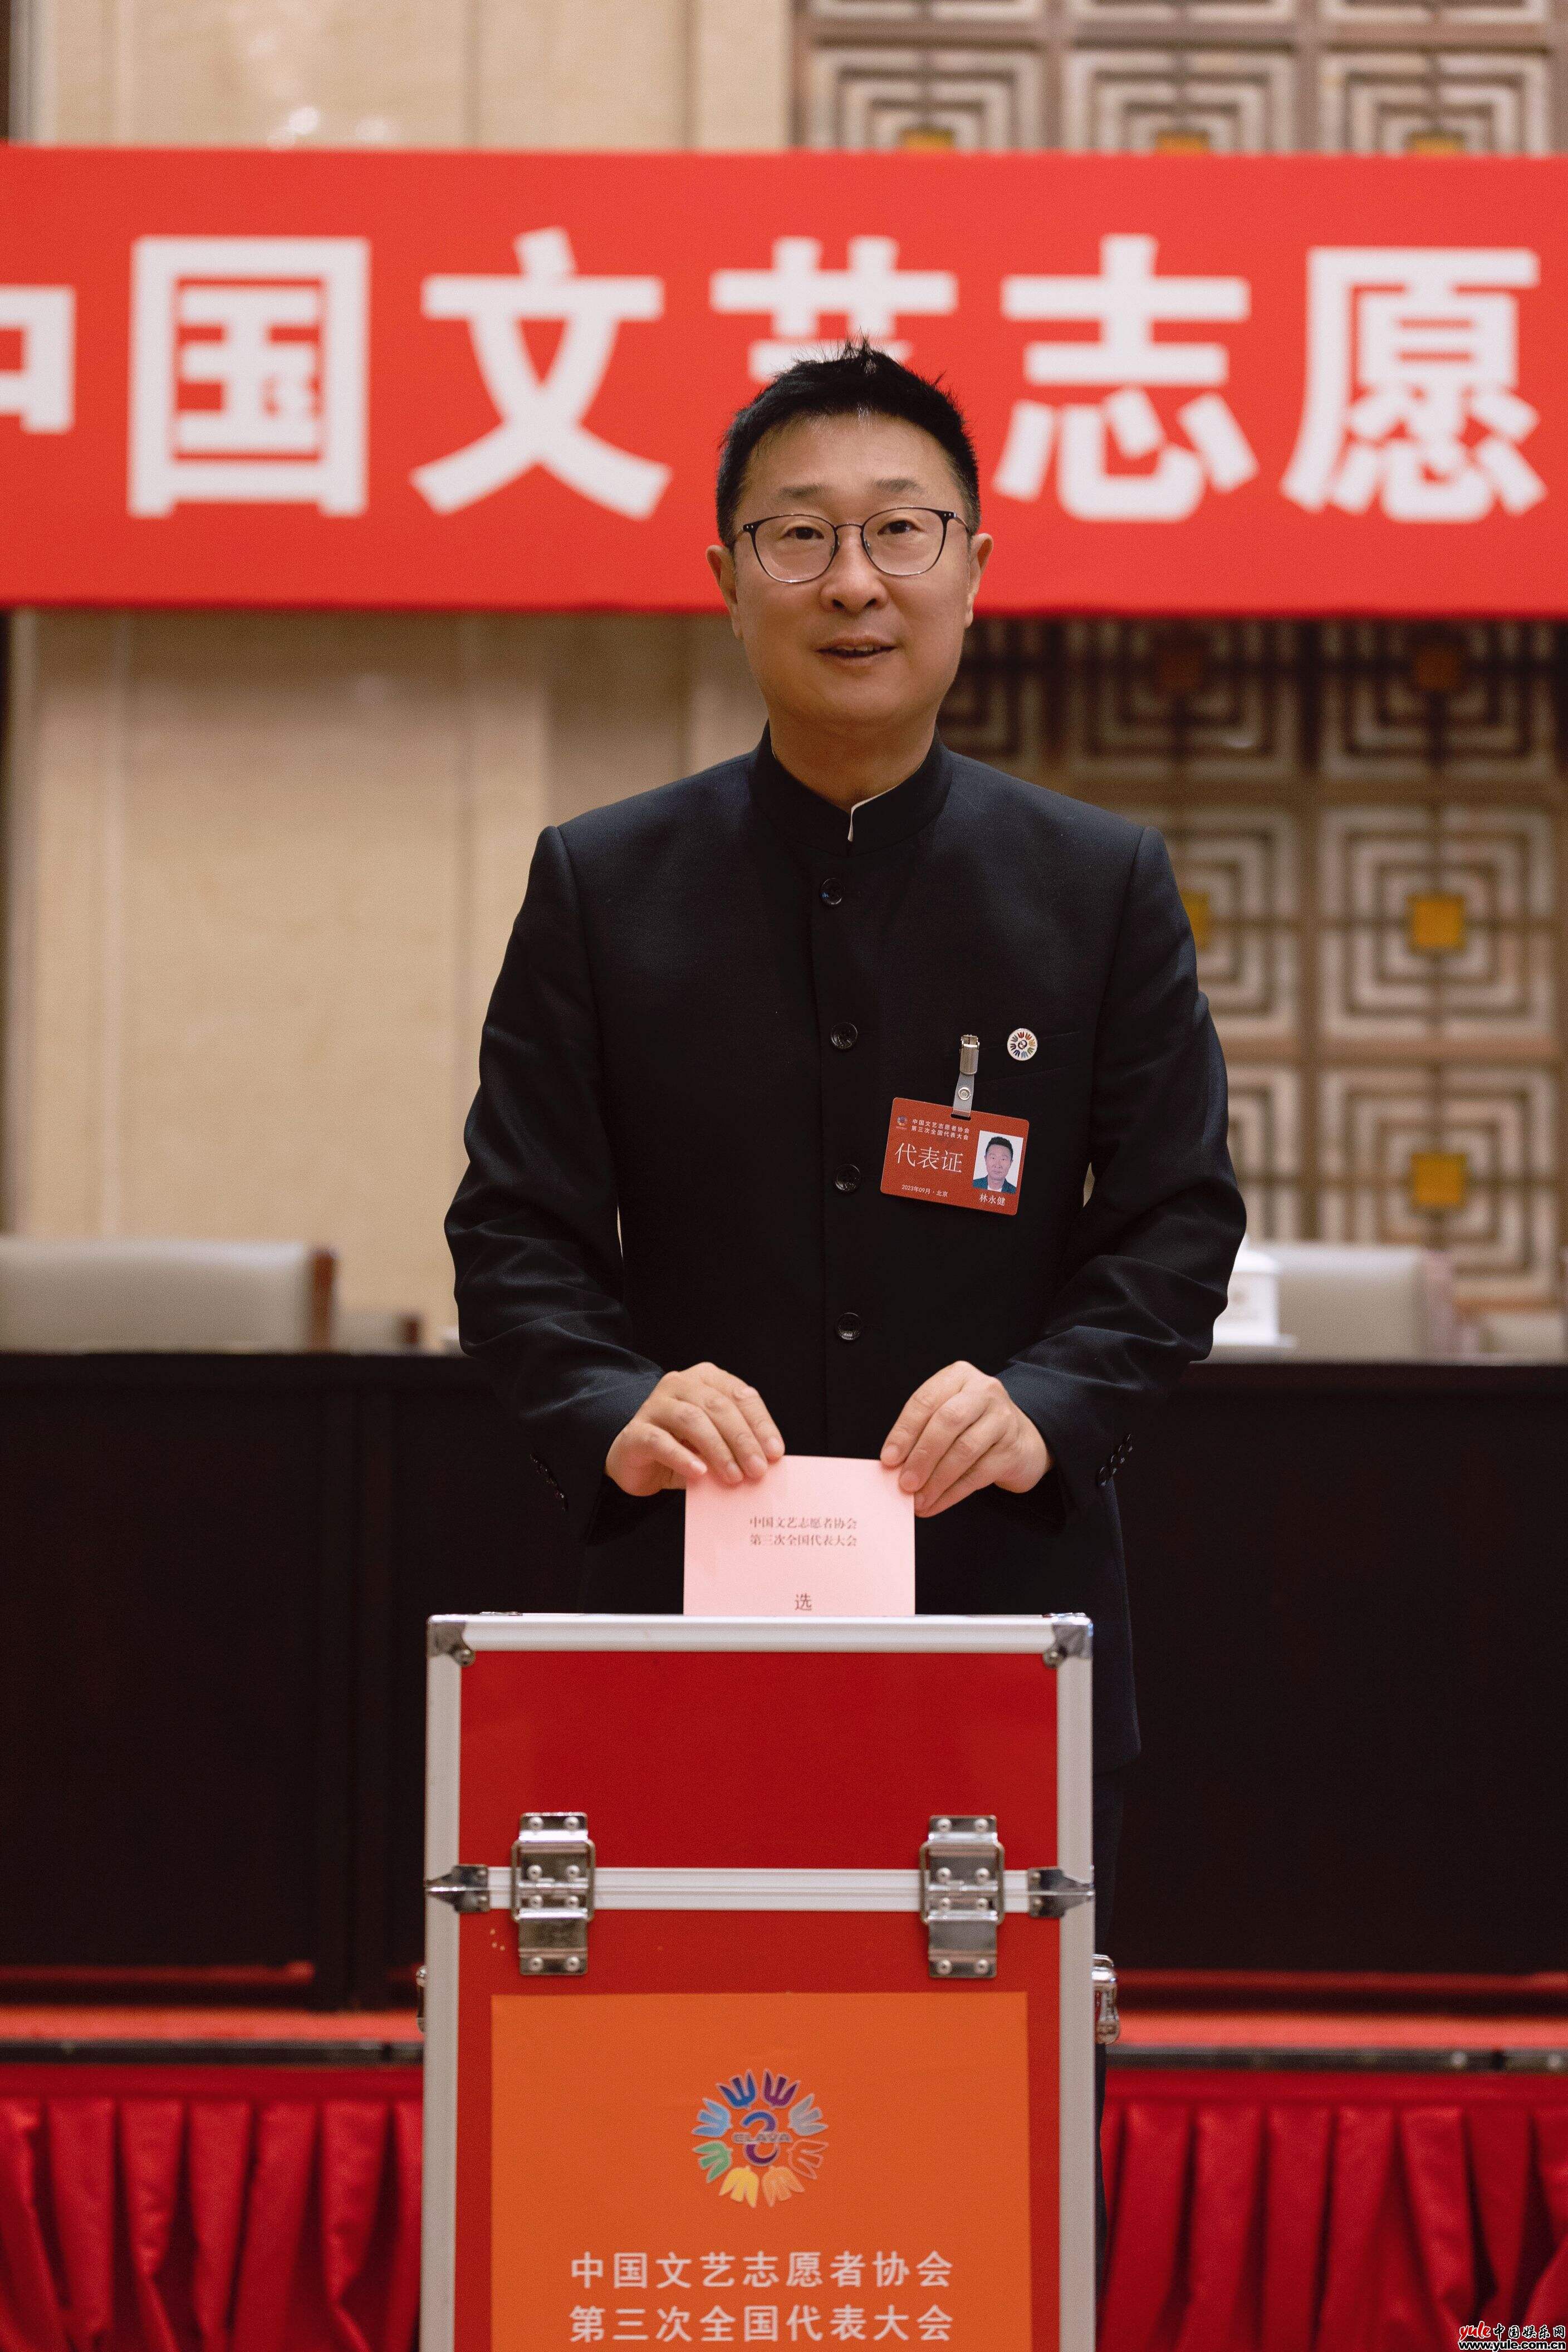 中国文艺志愿者协会第三次全国代表大会在京召开 林永健当选副主席